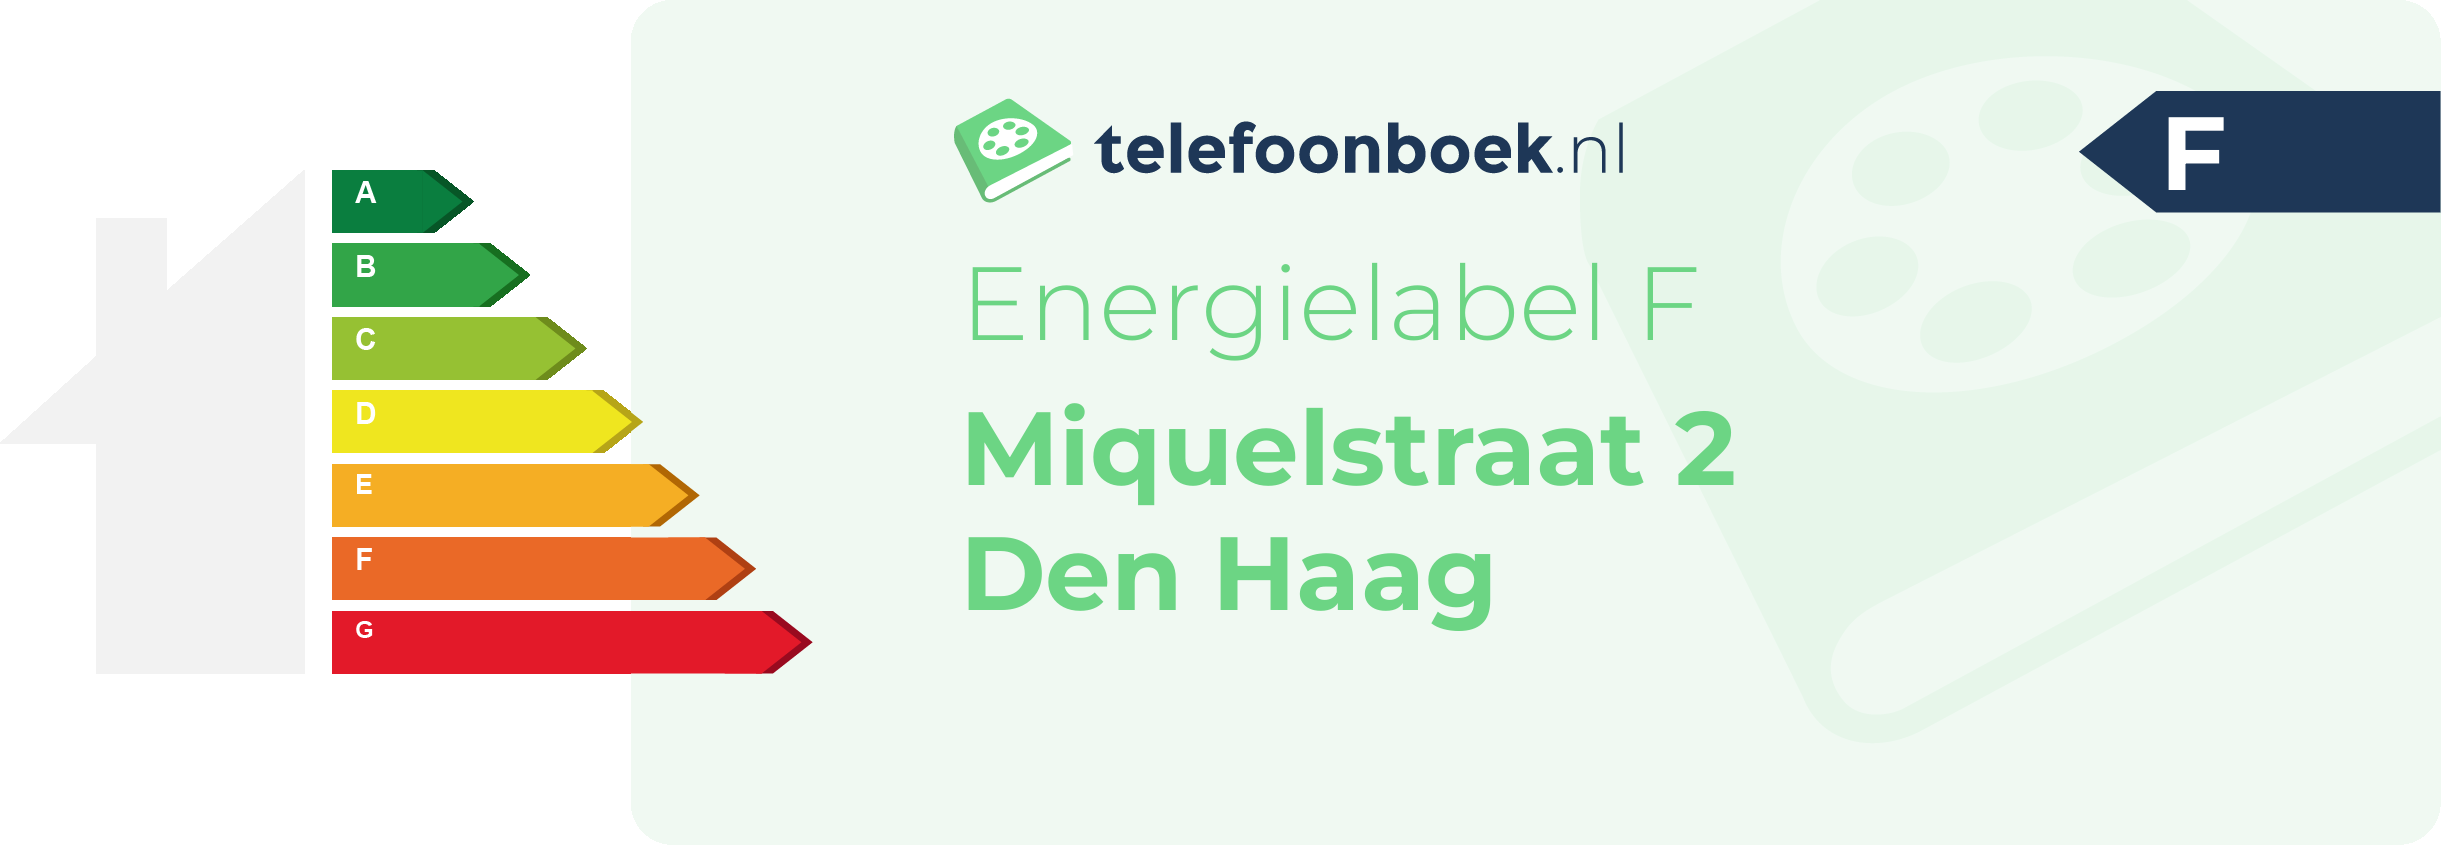 Energielabel Miquelstraat 2 Den Haag